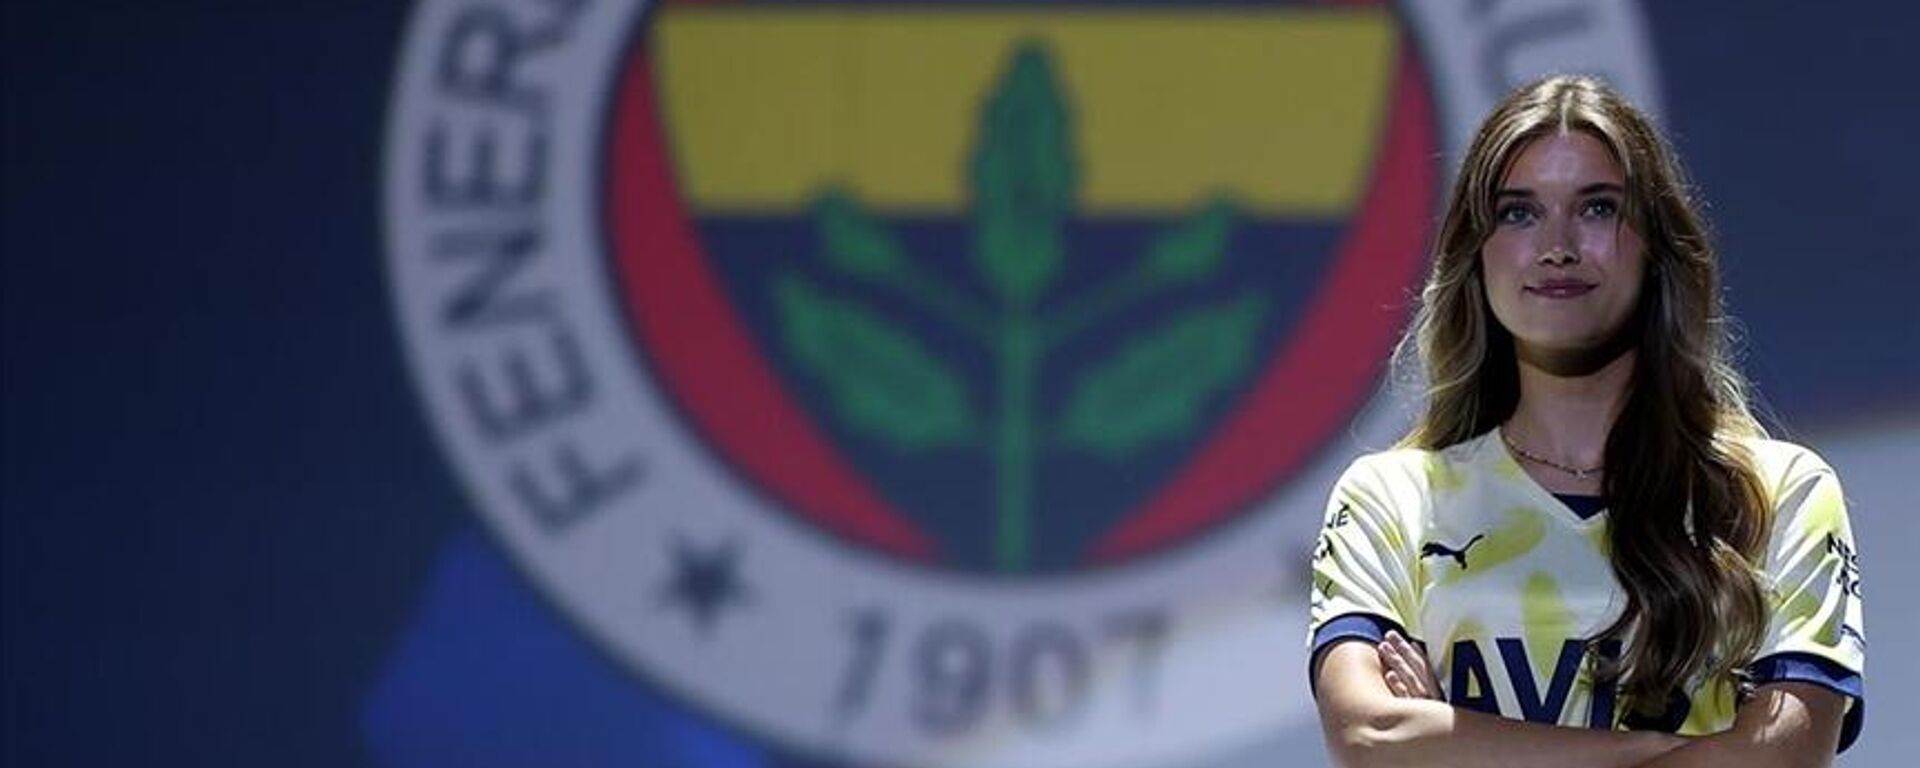 Fenerbahçe'nin yeni sezonda giyeceği formaların tanıtımında konuşan Ali Koç, Bugün bizim için özellikle önemli. Çünkü 11 yıldır maruz bırakıldığımız 3 Temmuz kumpası, gölgesi, iftiraları, fitnesi, fesadından kurtulduğumuz sene bu sene dedi. - Sputnik Türkiye, 1920, 20.07.2022